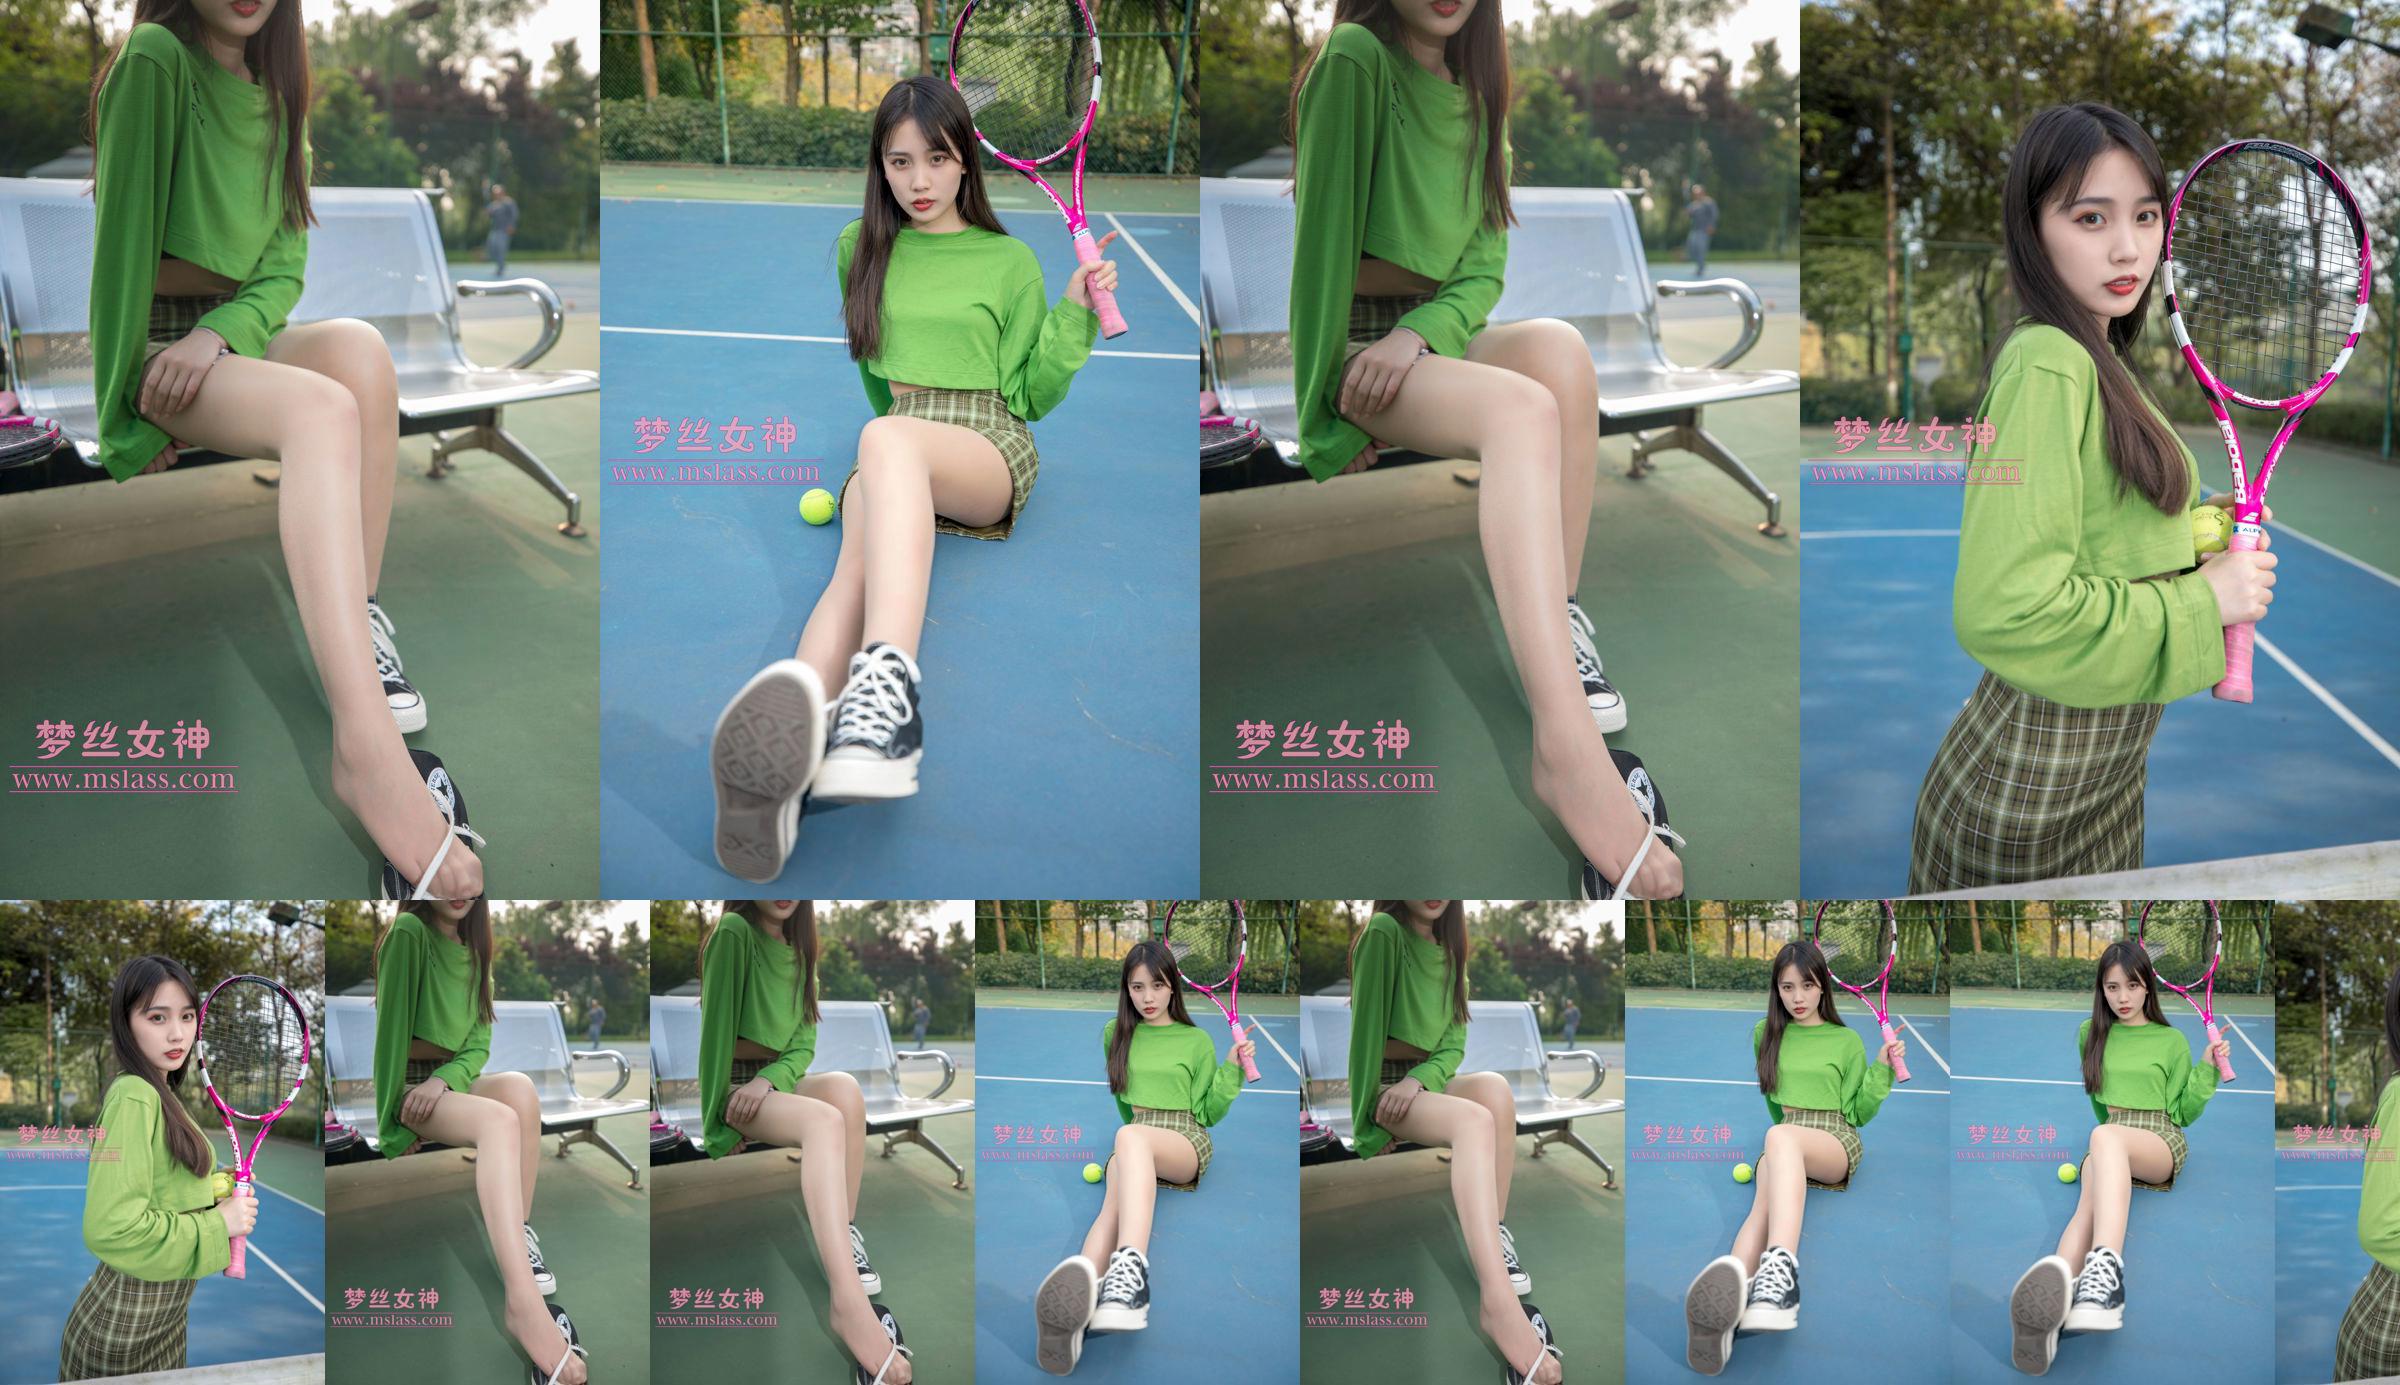 [เทพธิดาแห่งความฝัน MSLASS] Xiang Xuan Tennis Girl No.1c5ea8 หน้า 11